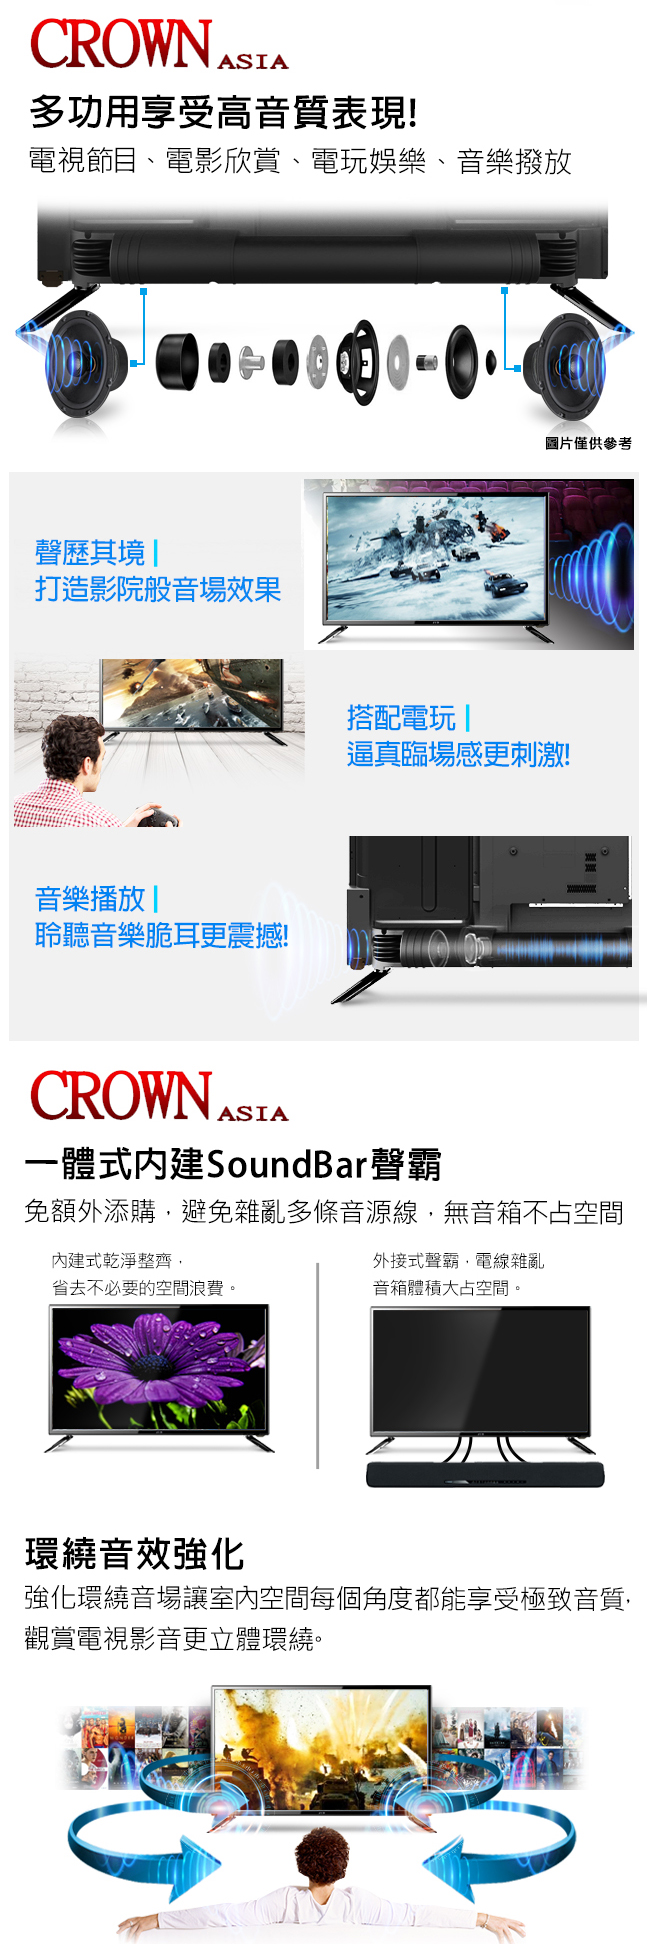 CROWN皇冠 32型HD超級聲霸多媒體液晶顯示器+類比視訊盒(CR-32B02.S)